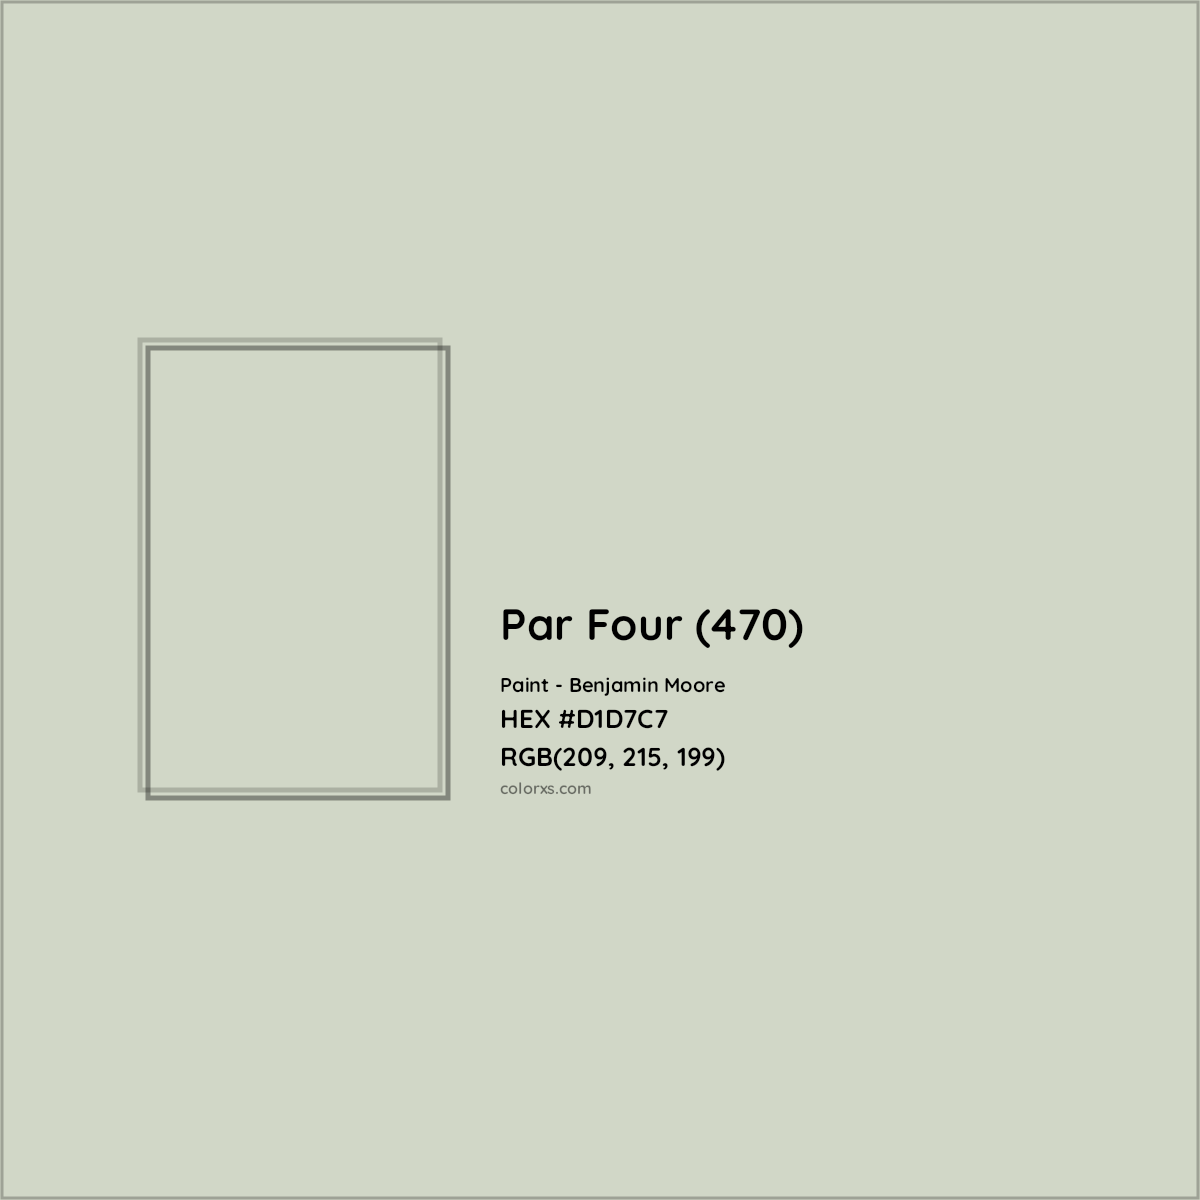 HEX #D1D7C7 Par Four (470) Paint Benjamin Moore - Color Code